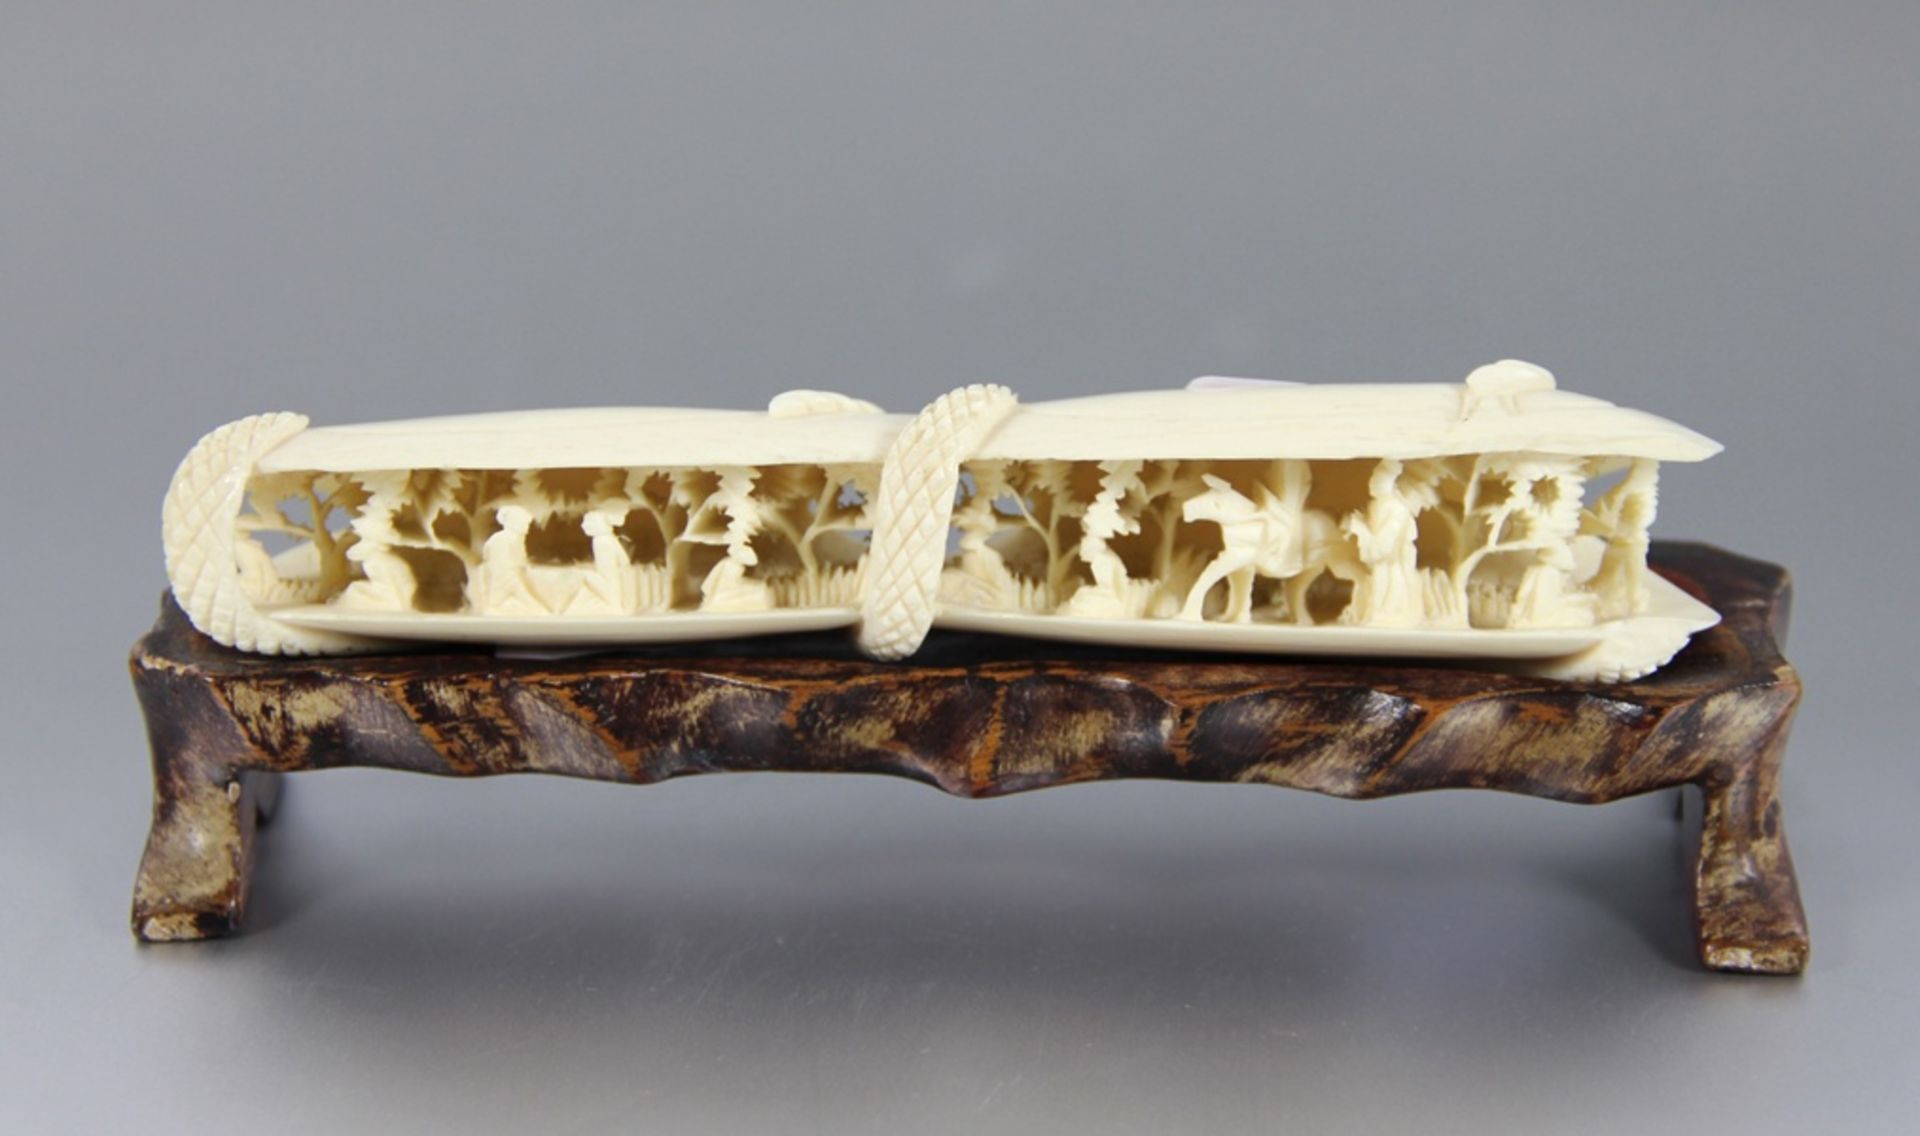 chinesische MiniaturlandschaftChina, wohl Elfenbein, 2 Muscheln, in deren halbgeöffnetem Inneren